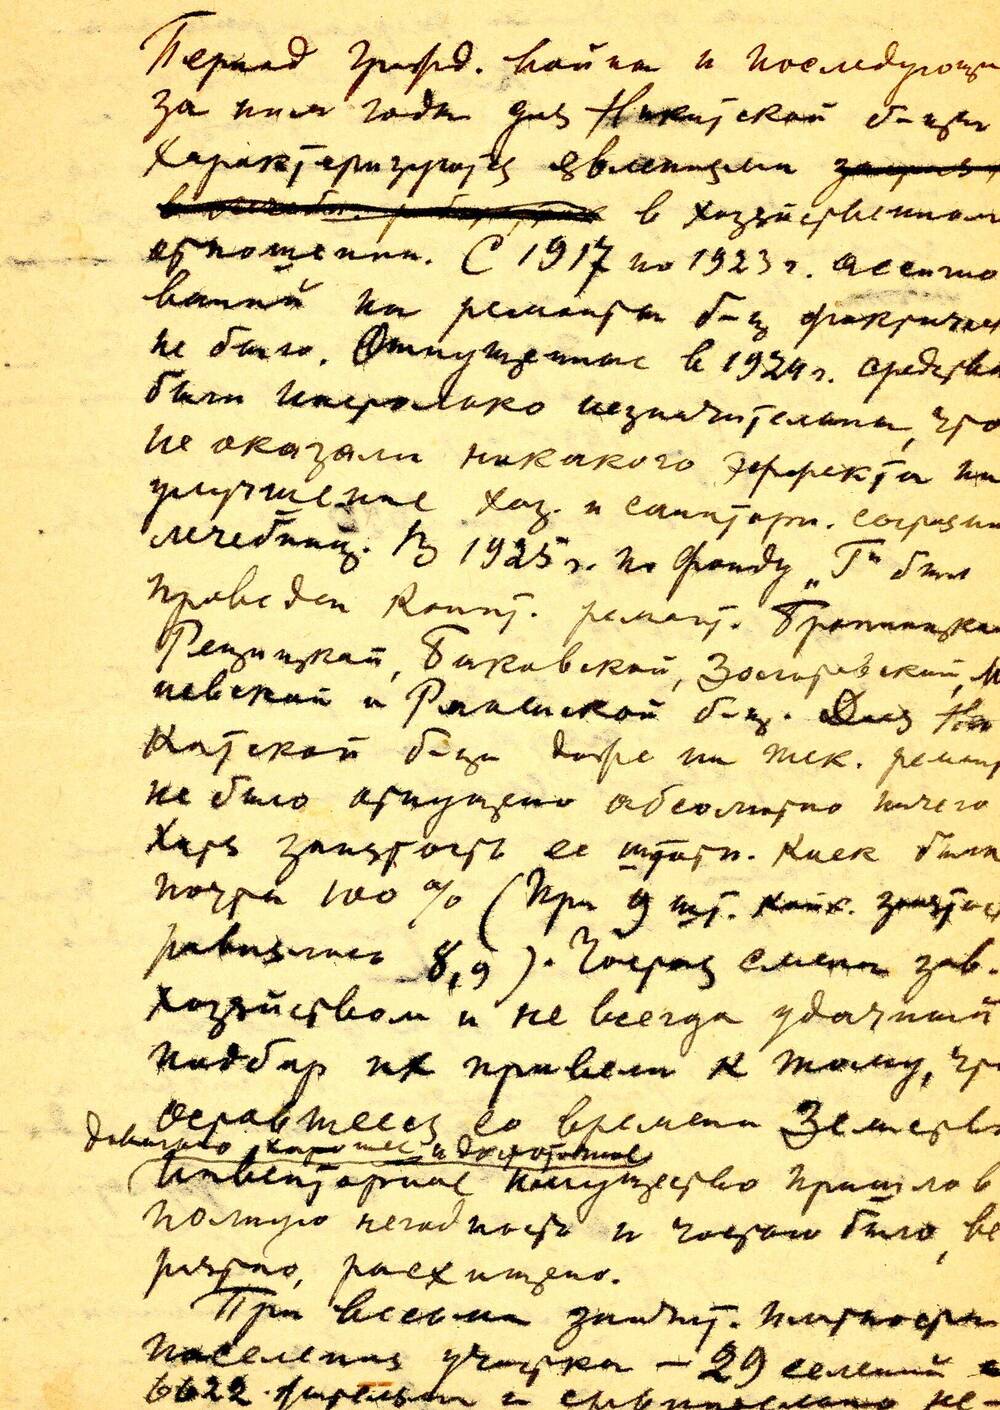 Очерк организации Никитского врачебного участка и его работа с 1903 по 1943 гг, написанный врачом Николаевым.